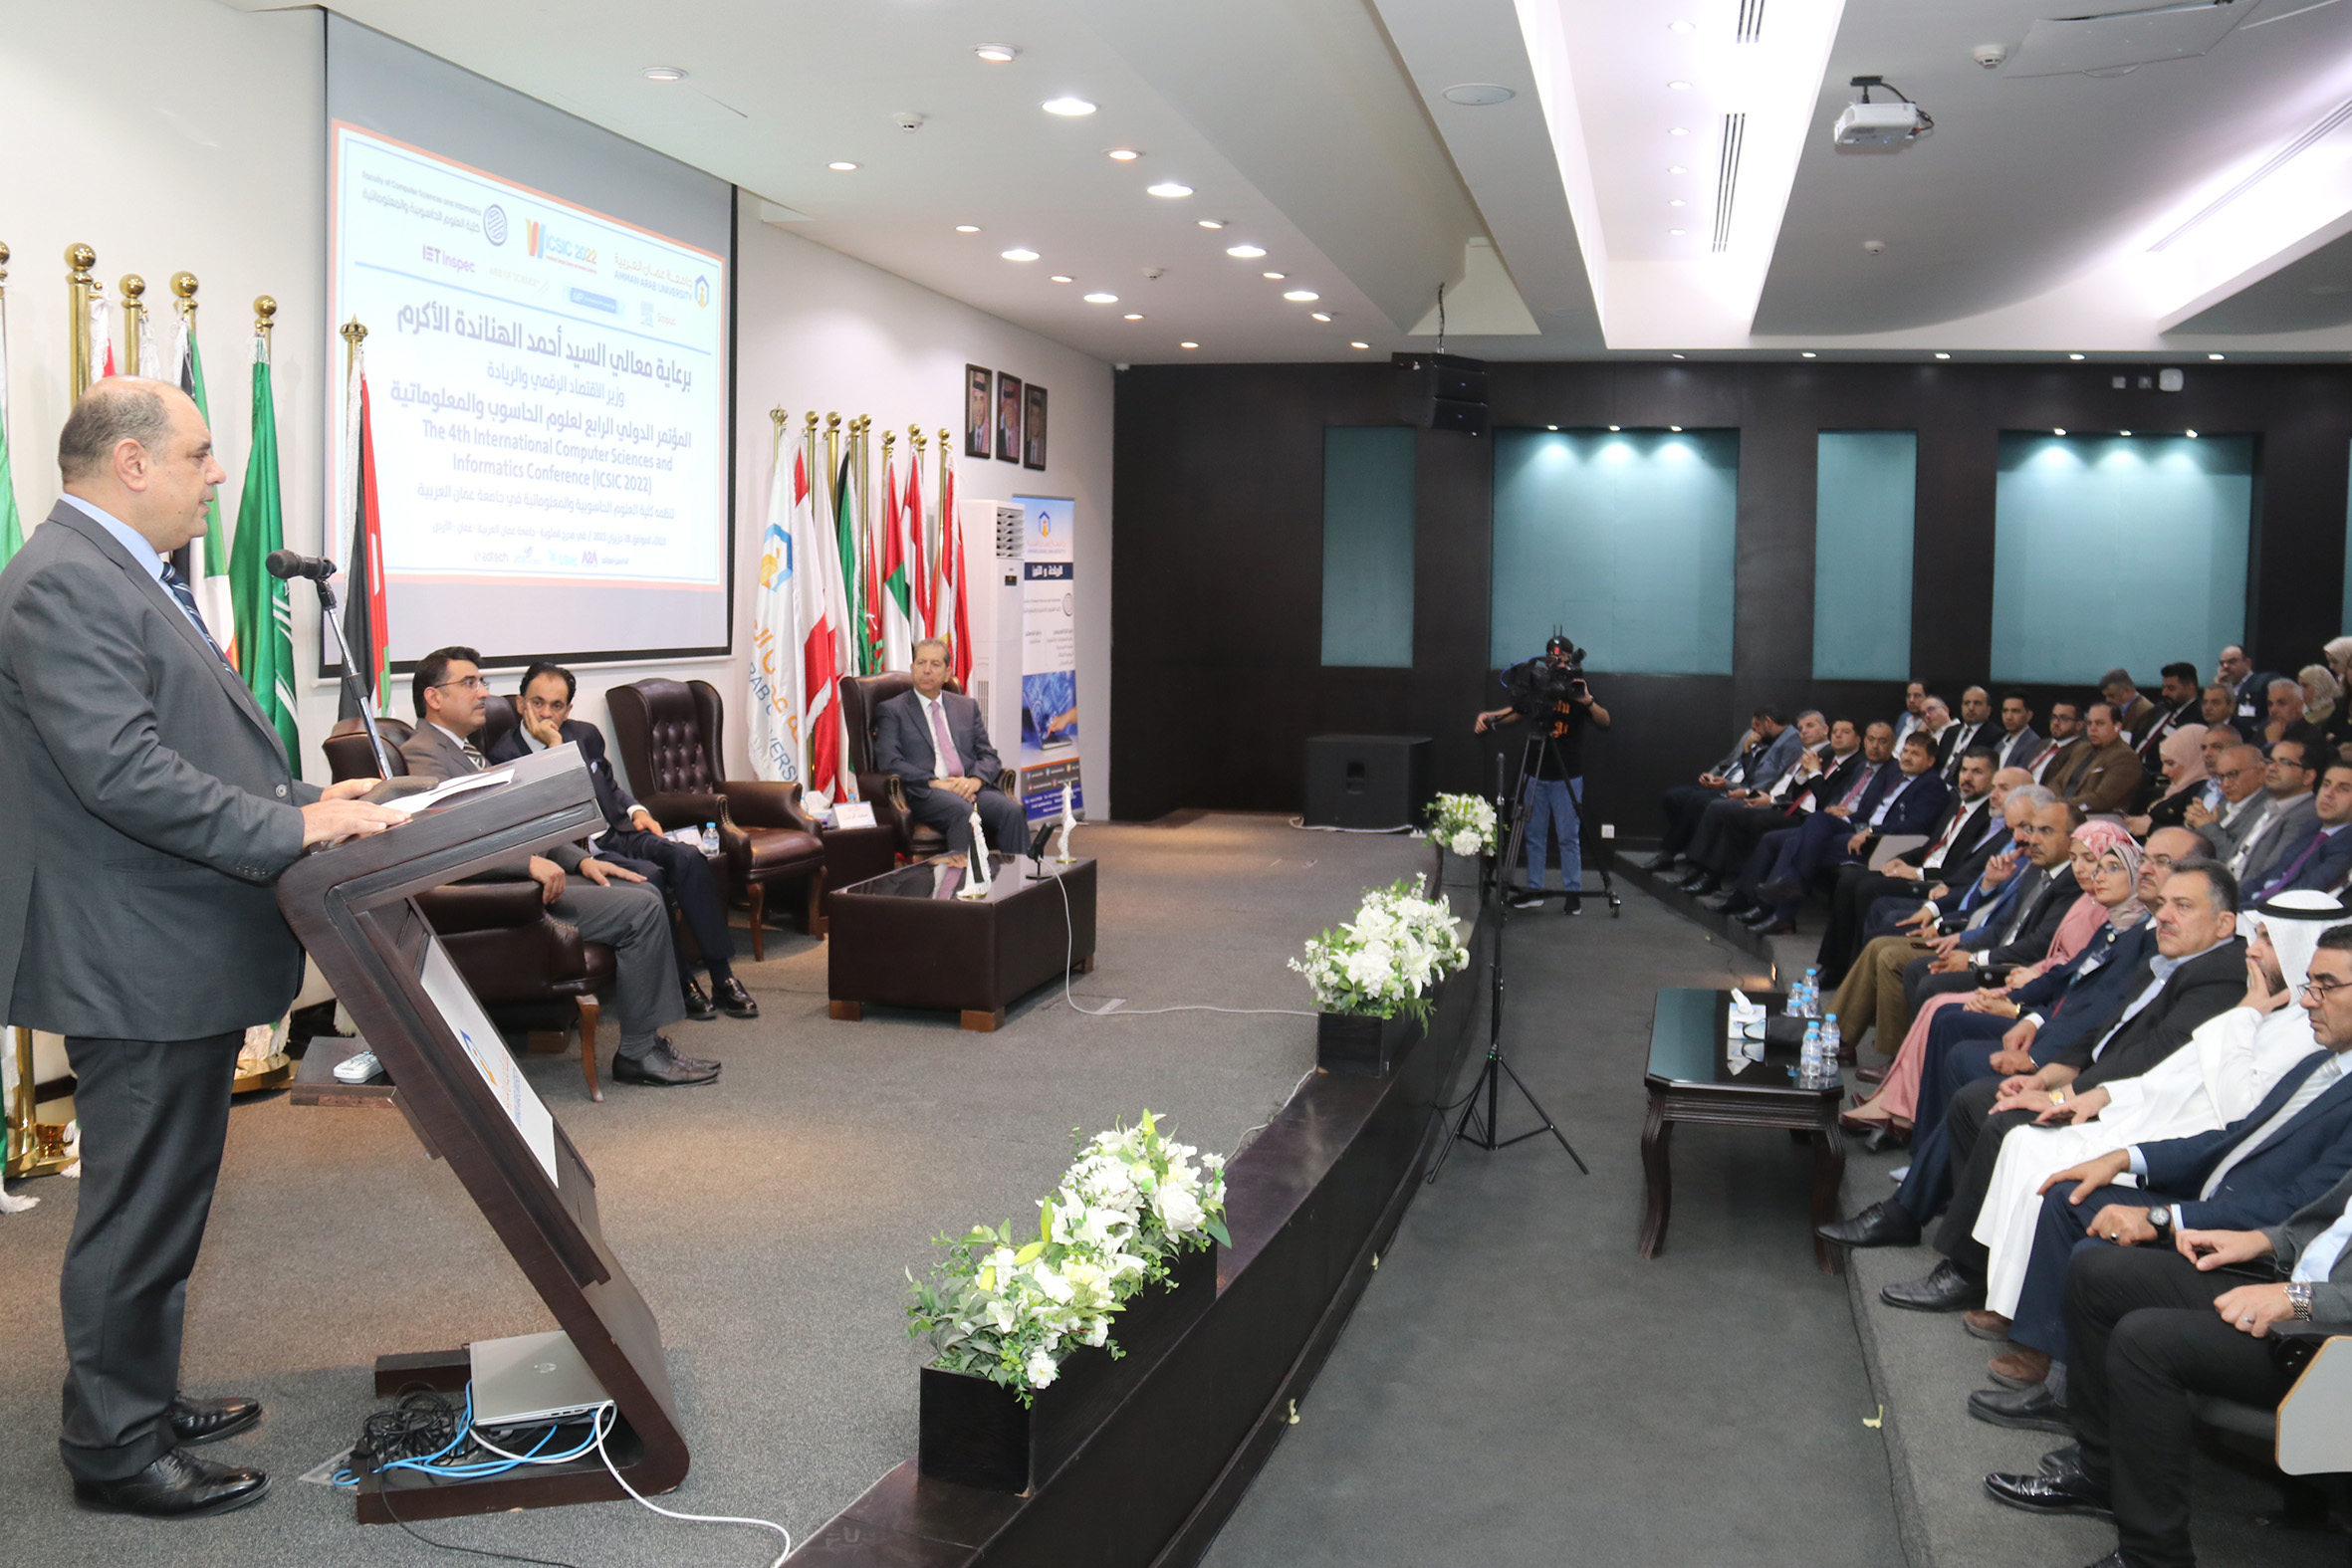 الهناندة يرعى افتتاح فعاليات المؤتمر الدولي الرابع في العلوم الحاسوبية والمعلوماتية في "عمان العربية"14